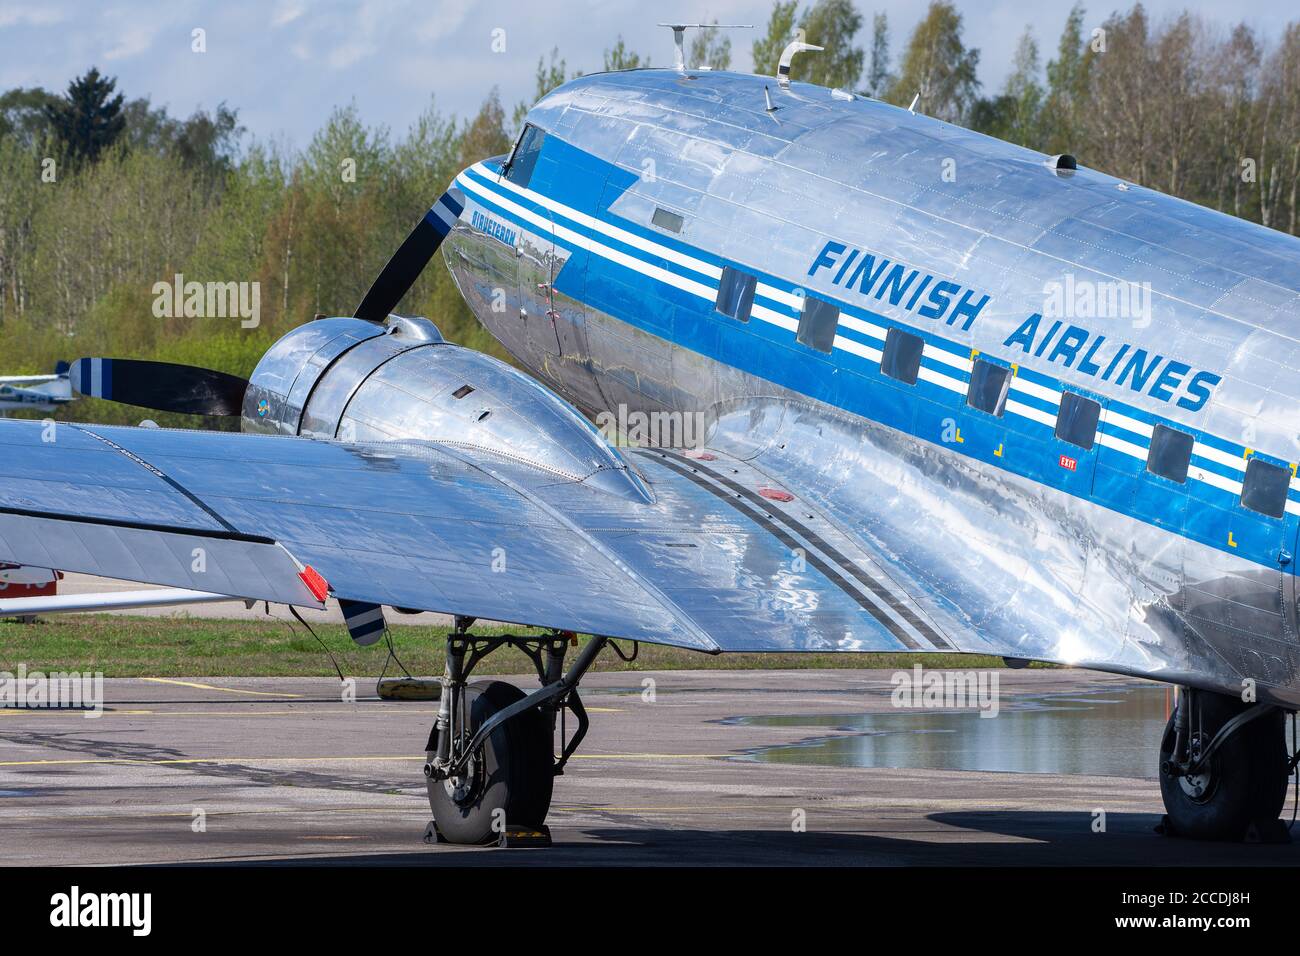 Helsinki / Finlande - 12 mai 2019 : OH-LCH, Aero Oy Douglas DC-3 avion de musée exploité par DC Association Finlande garée à l'aéroport Helsinki-Malmi. Banque D'Images